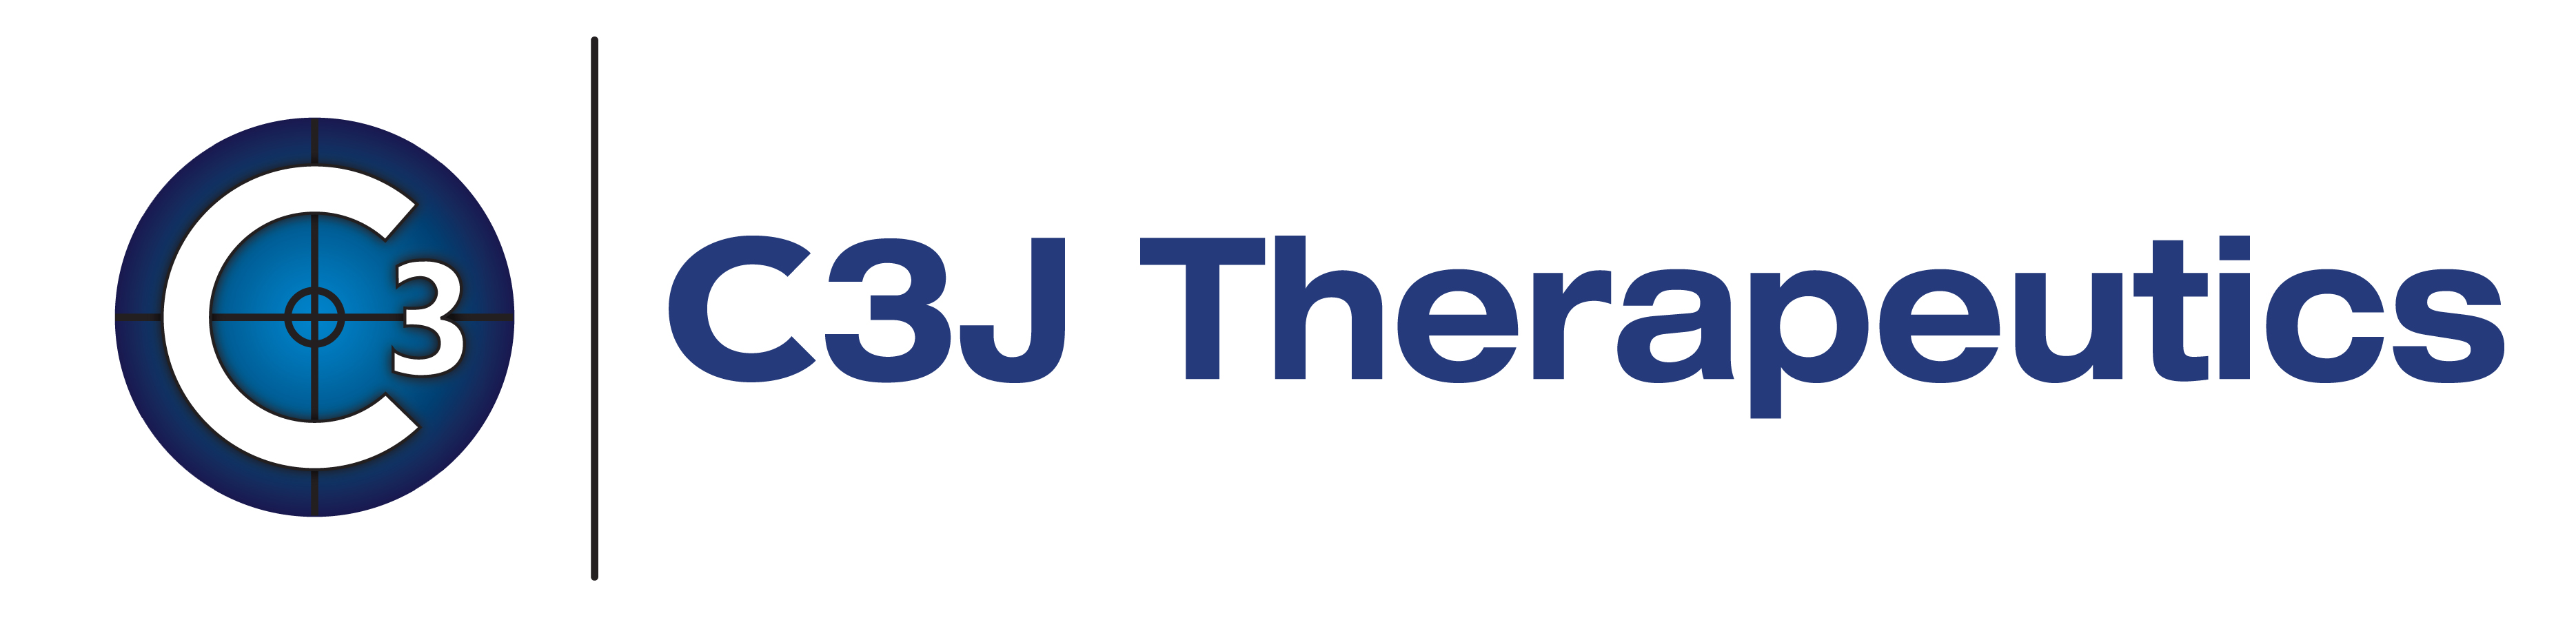 2018-05/c3j.logo.jpg